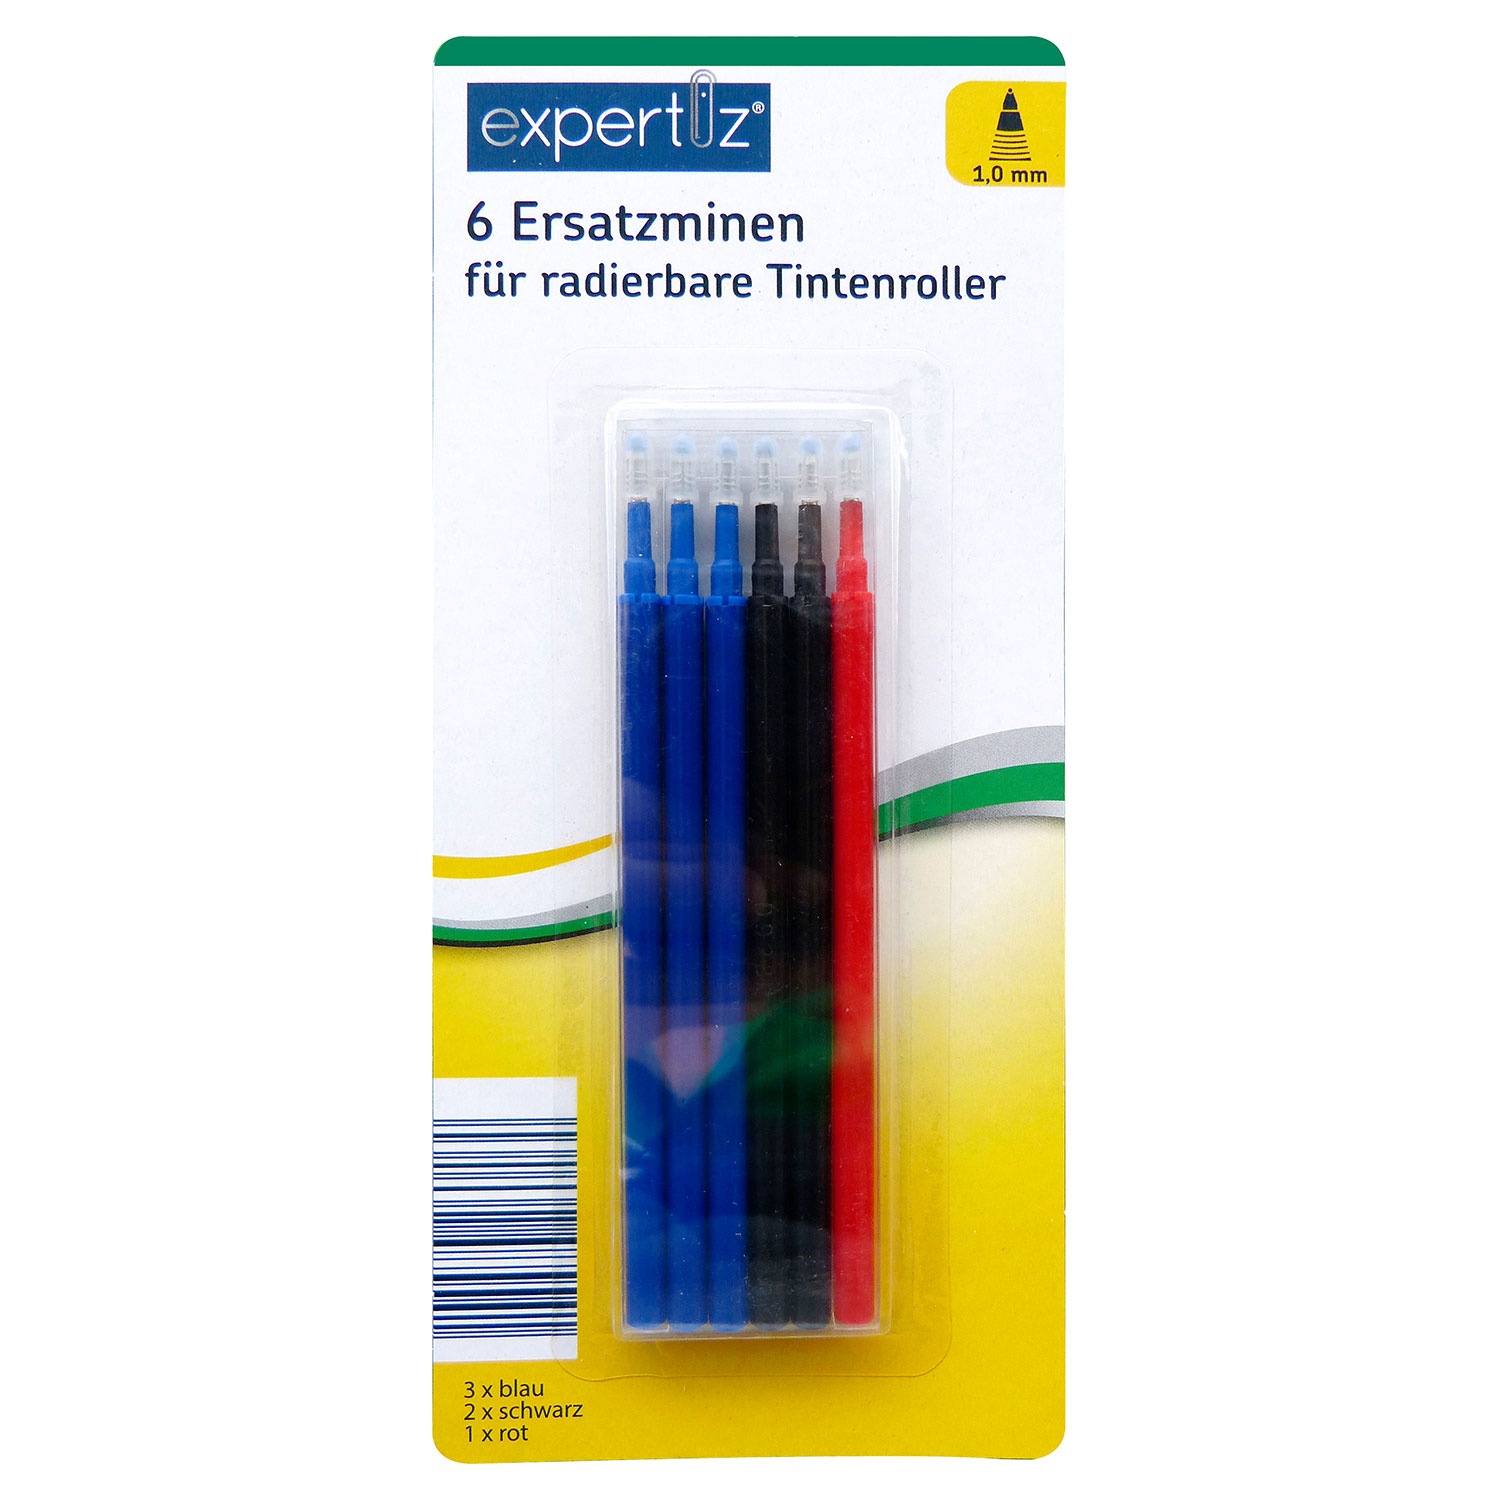 EXPERTIZ Radierbare Tintenroller oder Ersatzminen, 4er-/6er-Set